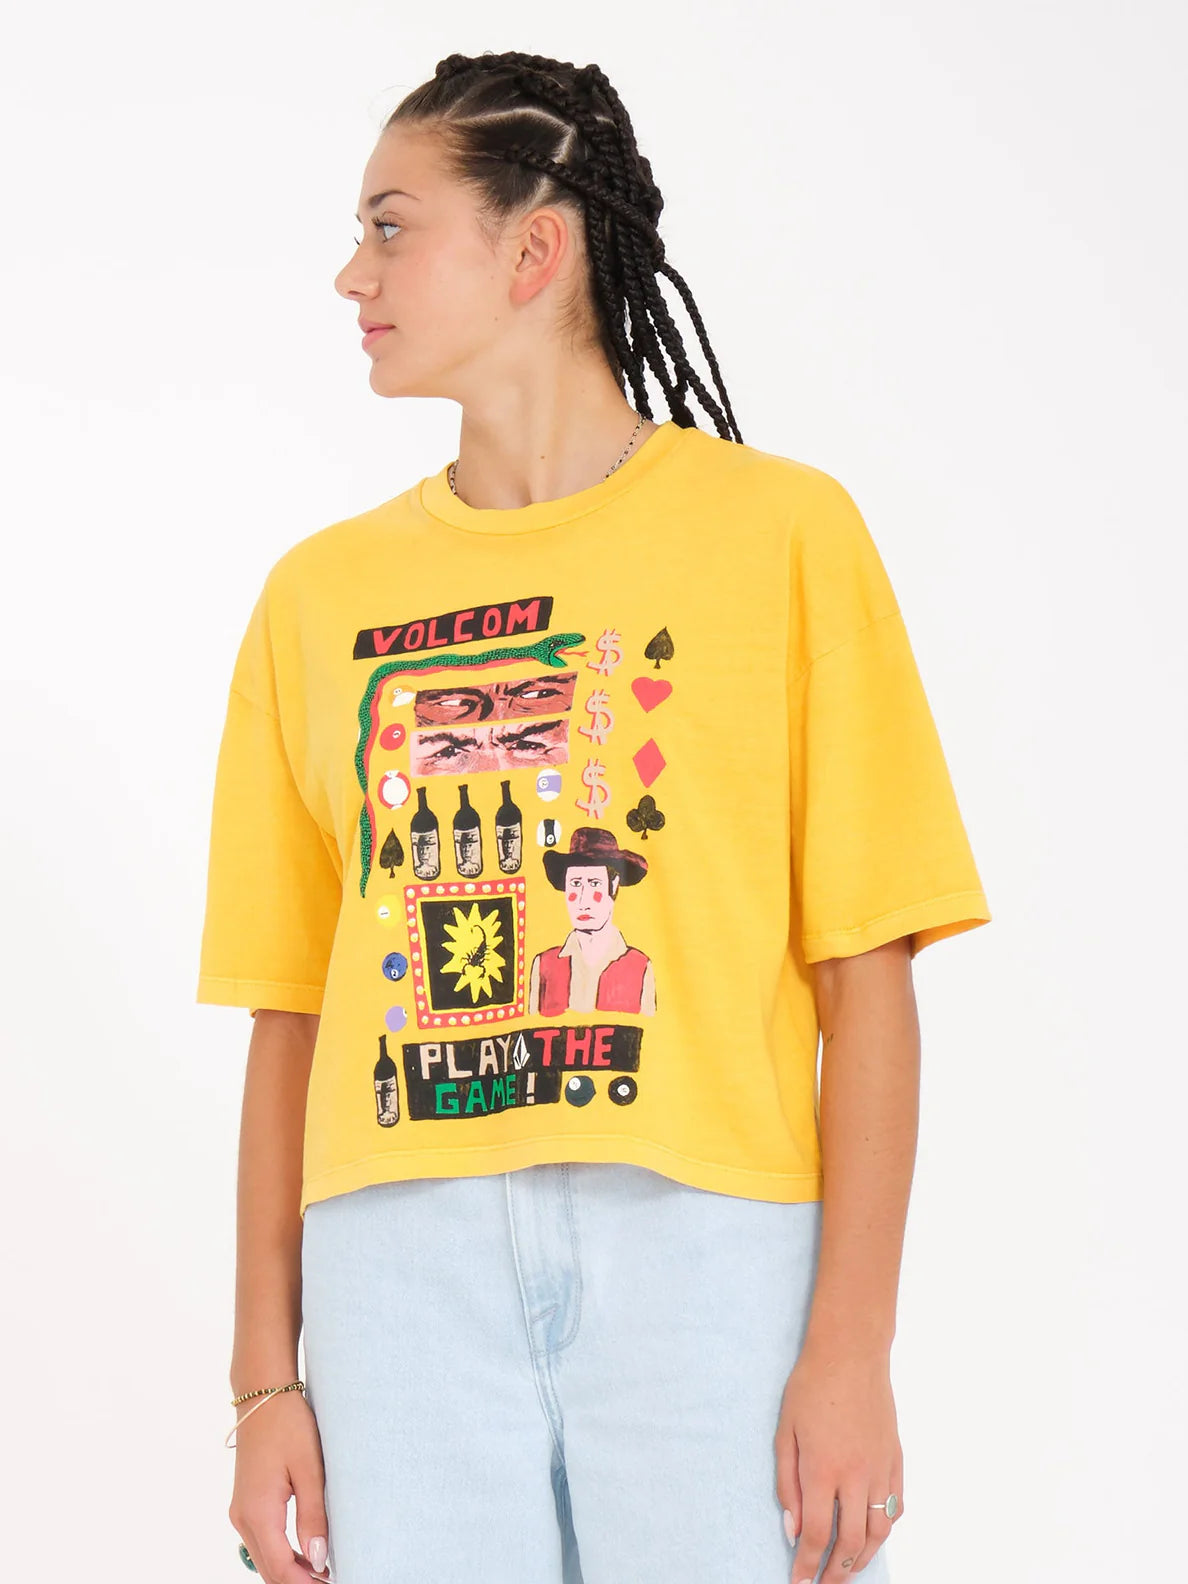 Camiseta Chica Volcom Play The Tee - Citrus | Camisetas manga corta de mujer | Volcom Shop | surfdevils.com